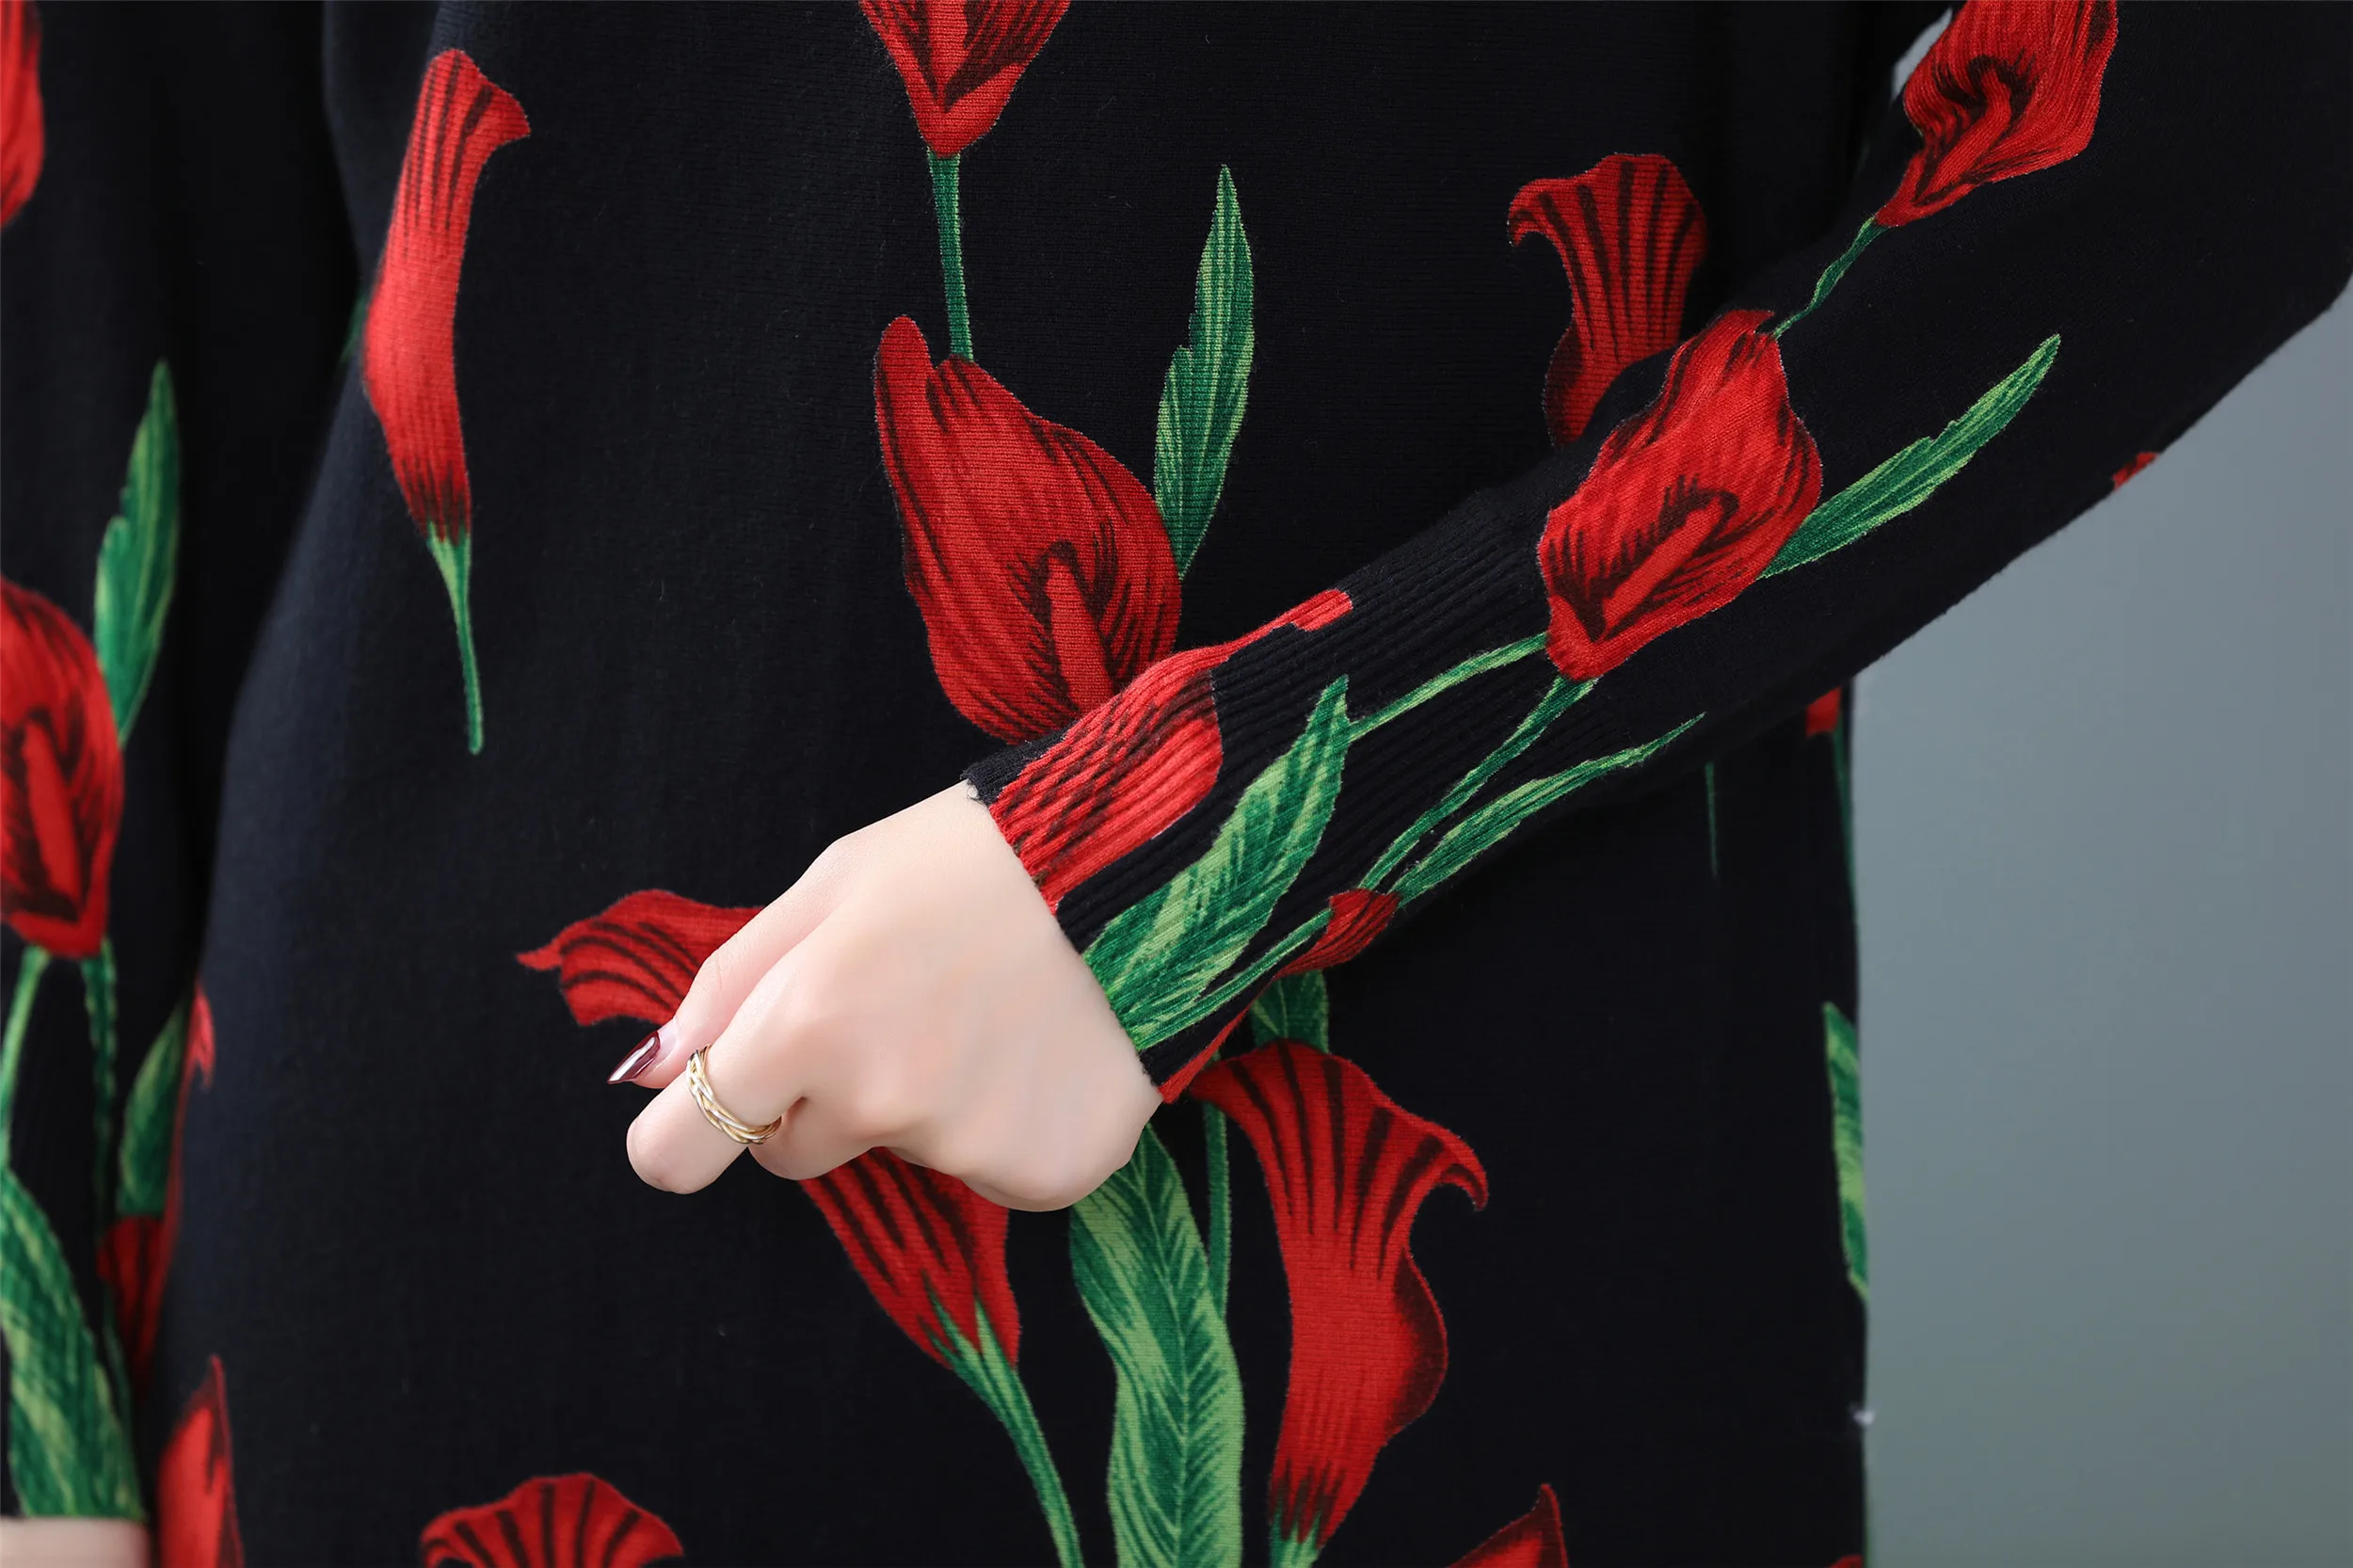 YISU свитер платье женское осенне-зимнее вязаное прямое платье модное цветочное печатное пуловер свободное платье с длинным рукавом